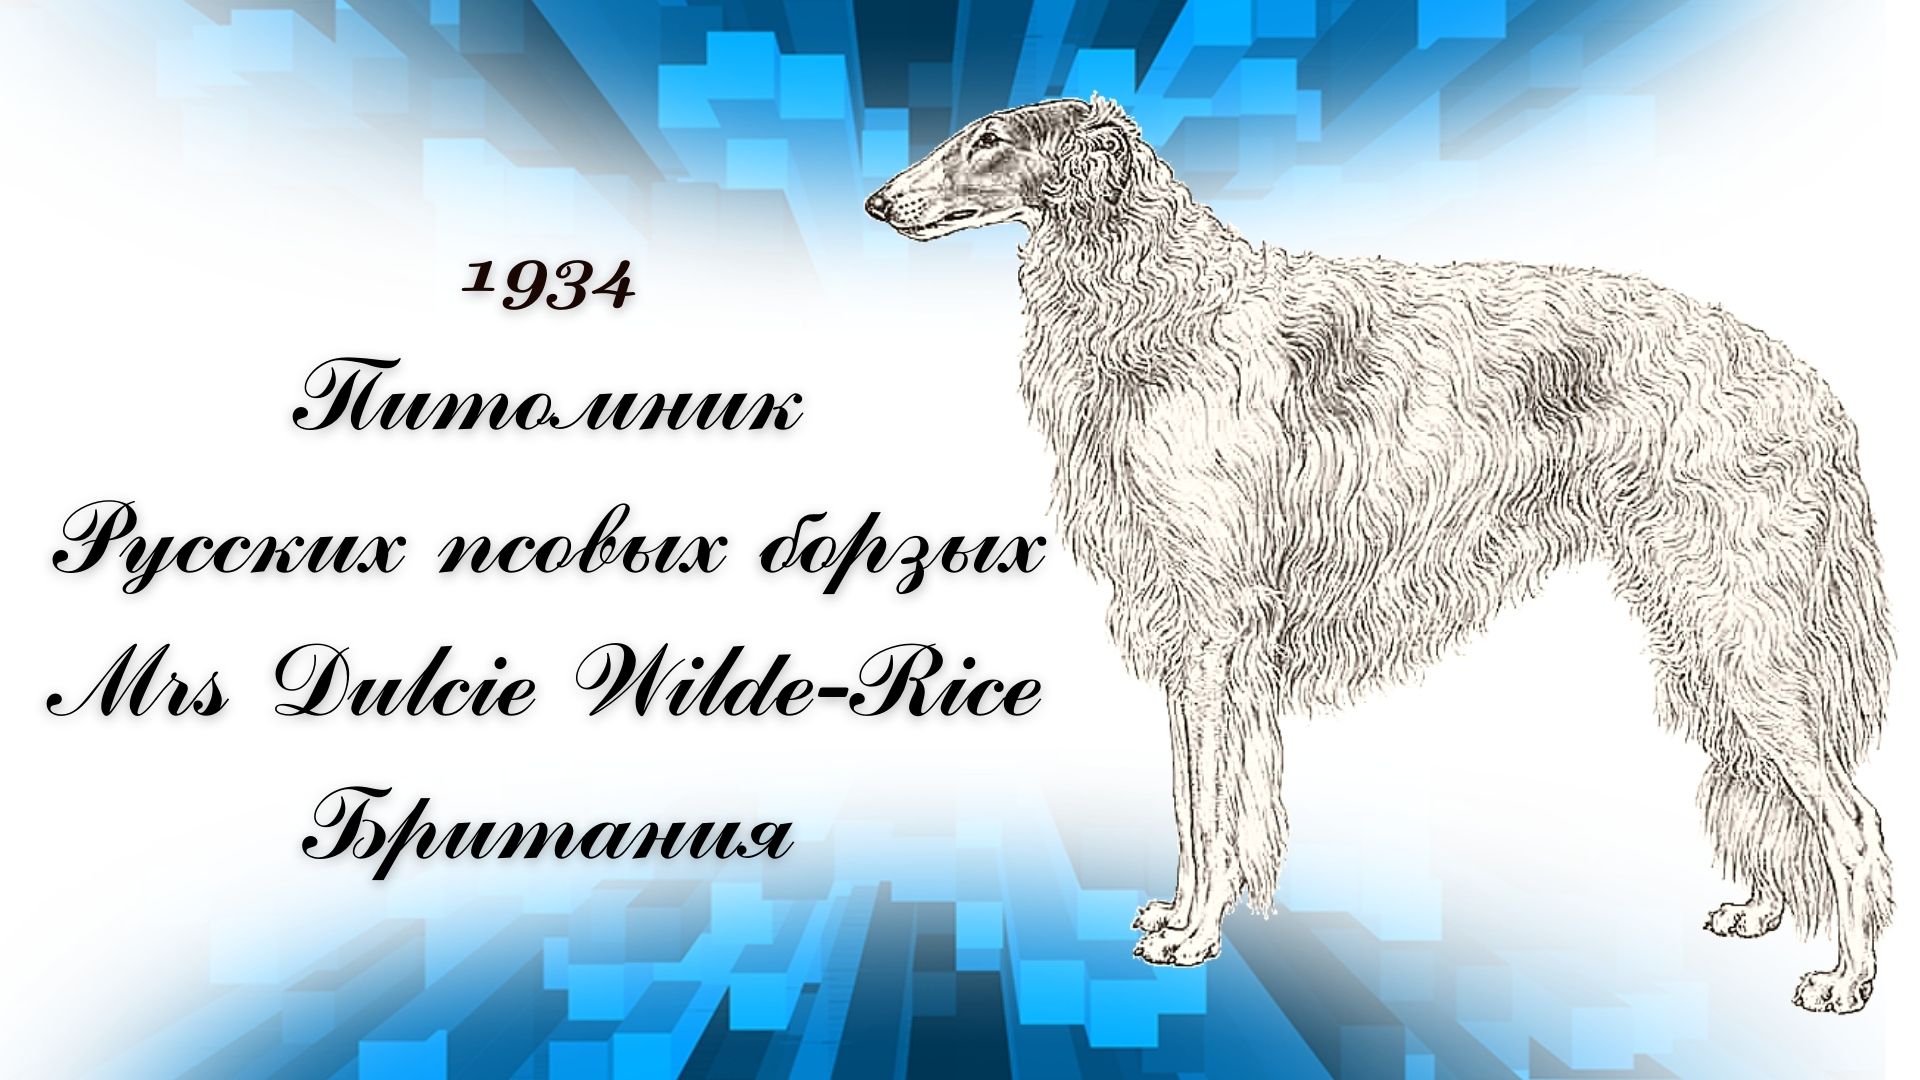 1934 Питомник Русских псовых борзых
Mrs Dulcie Wilde-Rice
Британия